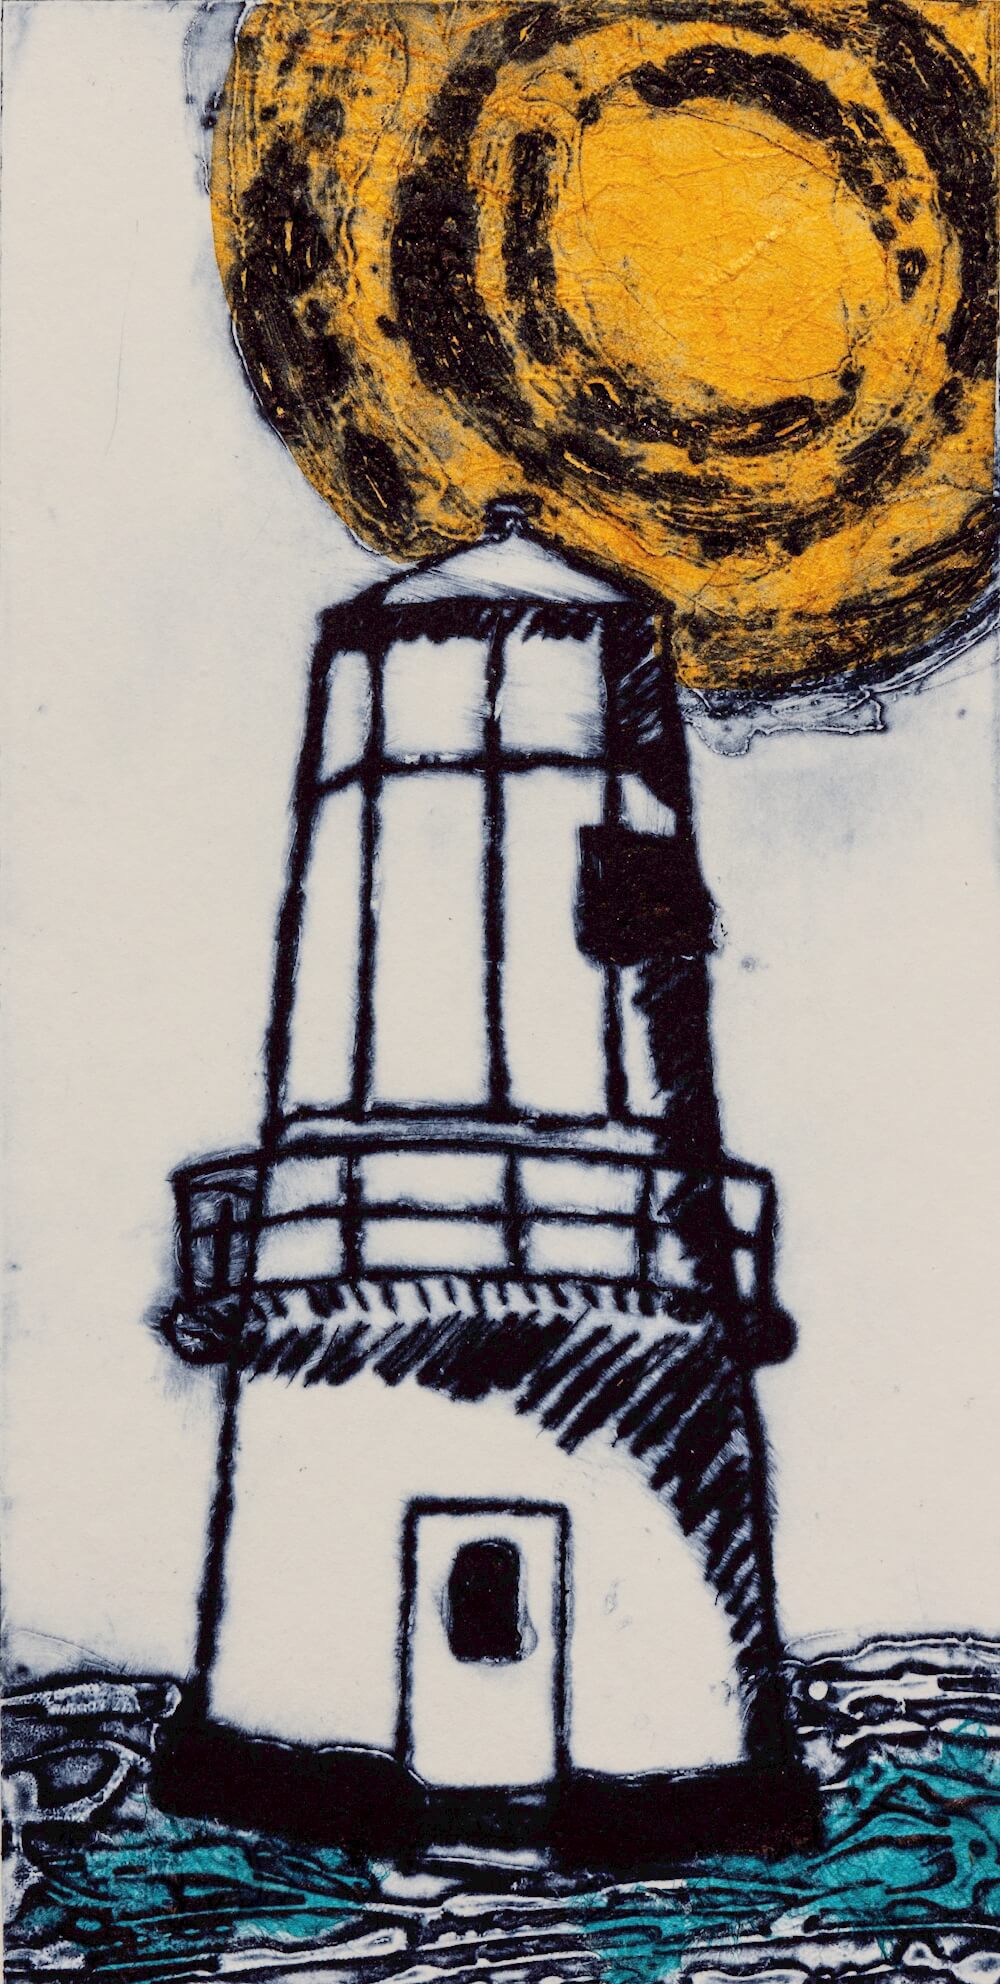 Lighthouse I by Sharran Makin © Sharran Makin